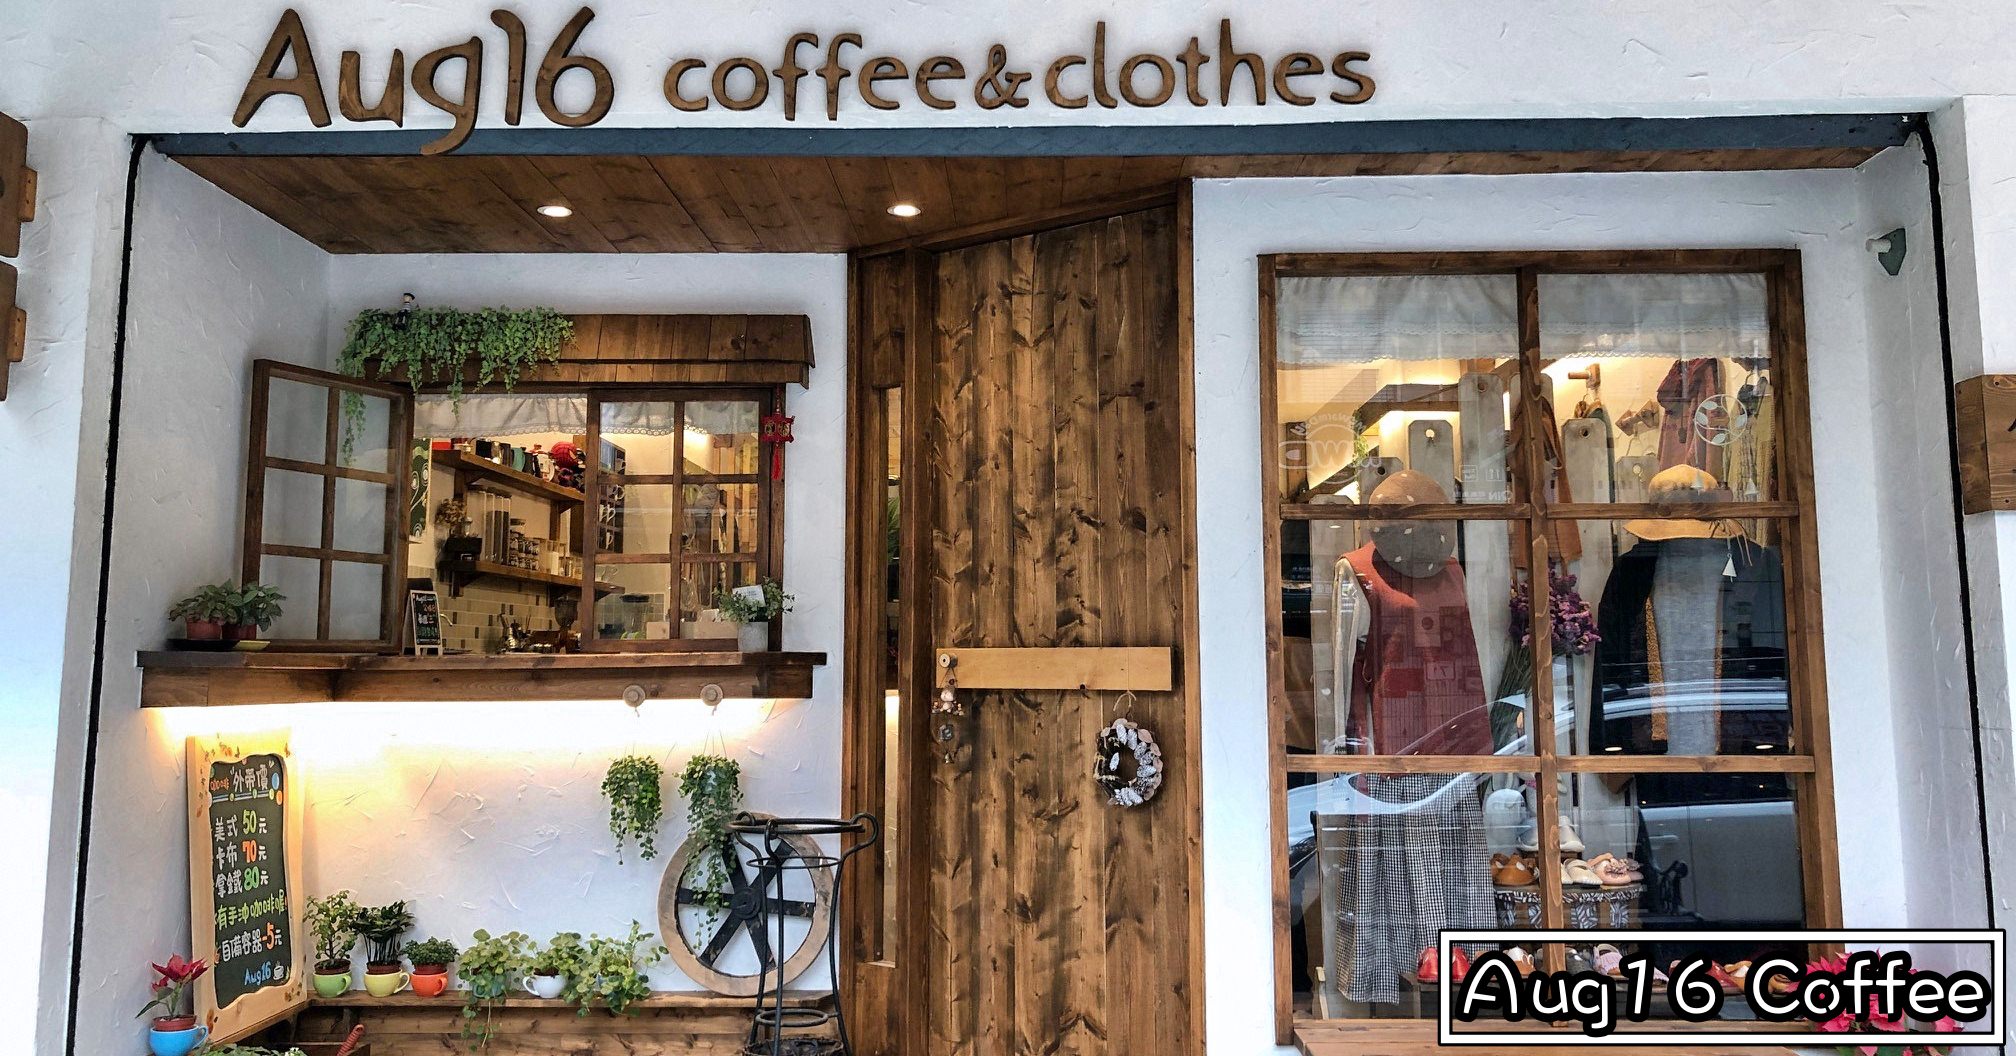 天母咖啡推薦|八月十六咖啡 Aug16 Coffee & Clothes (菜單menu價錢)